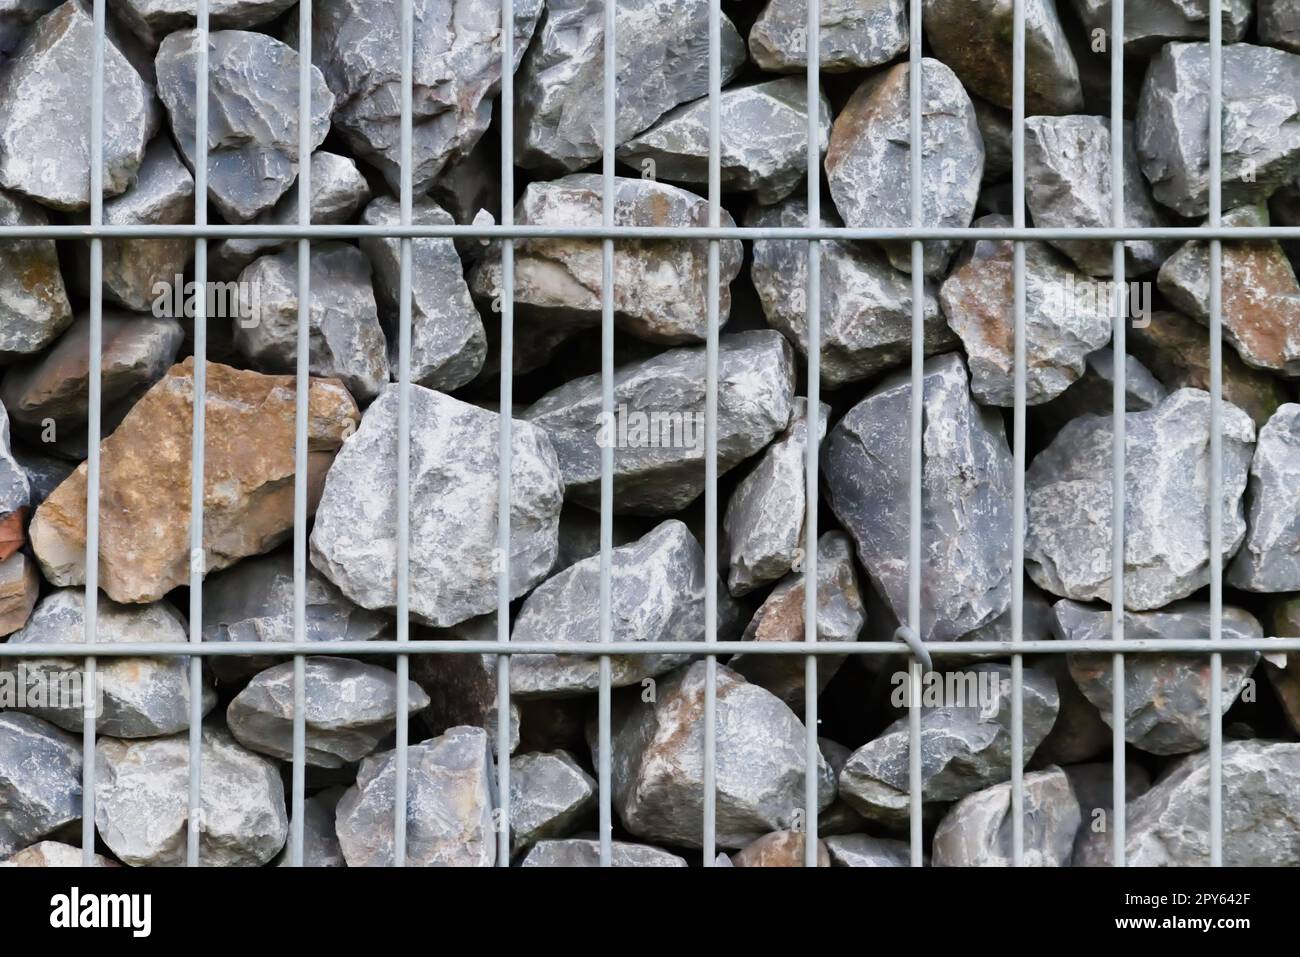 Rohe Felsen und graue Steinwände als Natursteinhintergrund mit zerkleinertem und rauem Material, das in Metallgitter gestapelt ist, als massiver Rand in grauen Farben als natürlicher mineralischer Hintergrund für Gärten Stockfoto